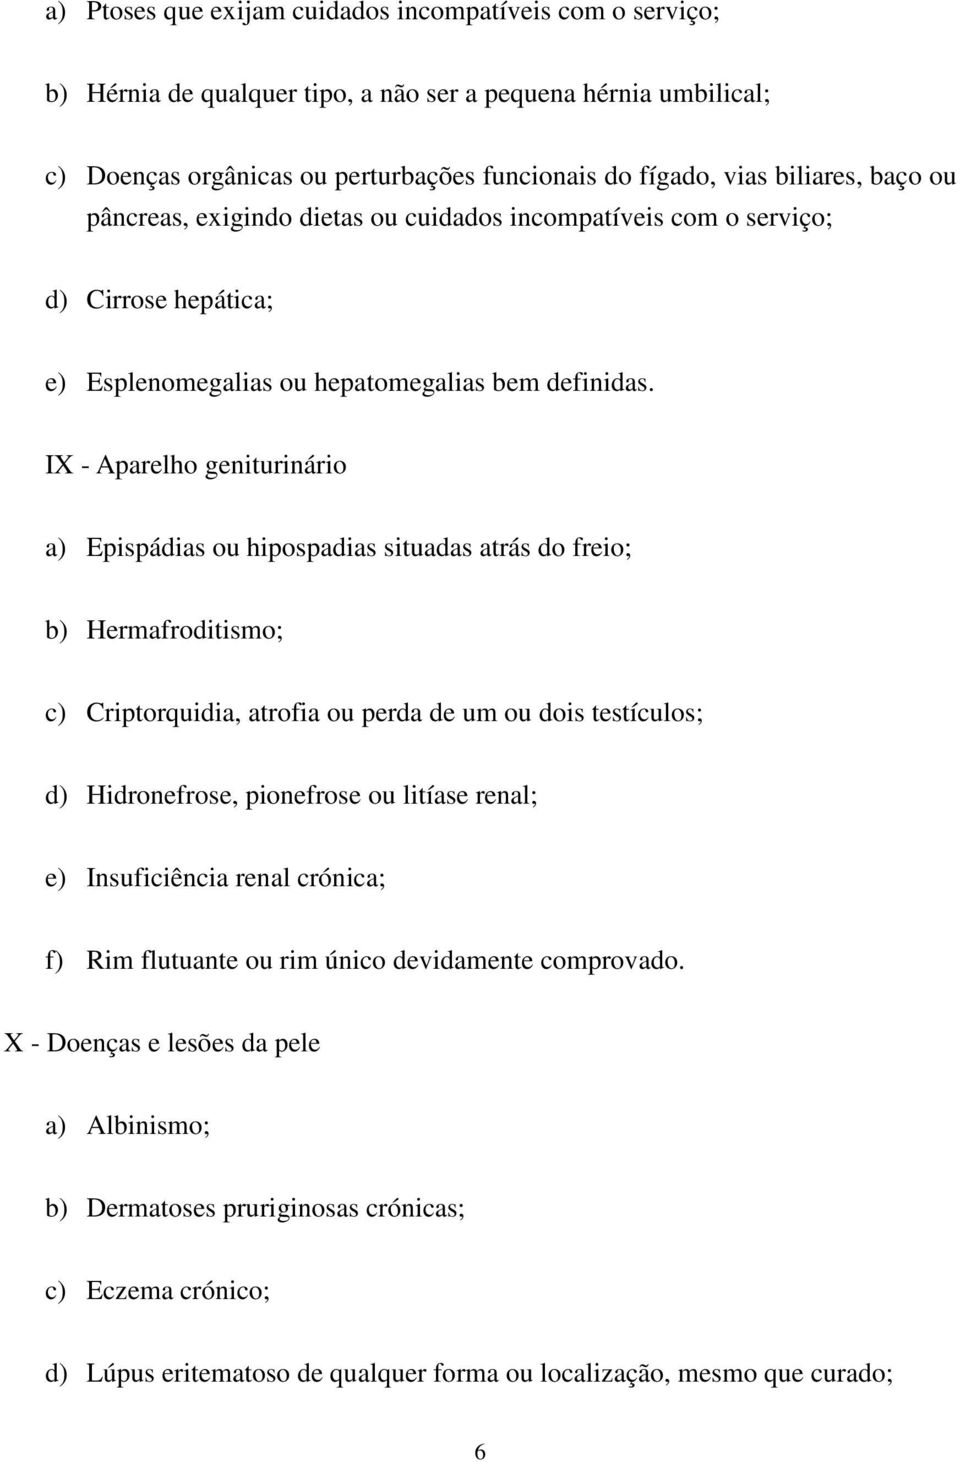 IX - Aparelho geniturinário a) Epispádias ou hipospadias situadas atrás do freio; b) Hermafroditismo; c) Criptorquidia, atrofia ou perda de um ou dois testículos; d) Hidronefrose, pionefrose ou